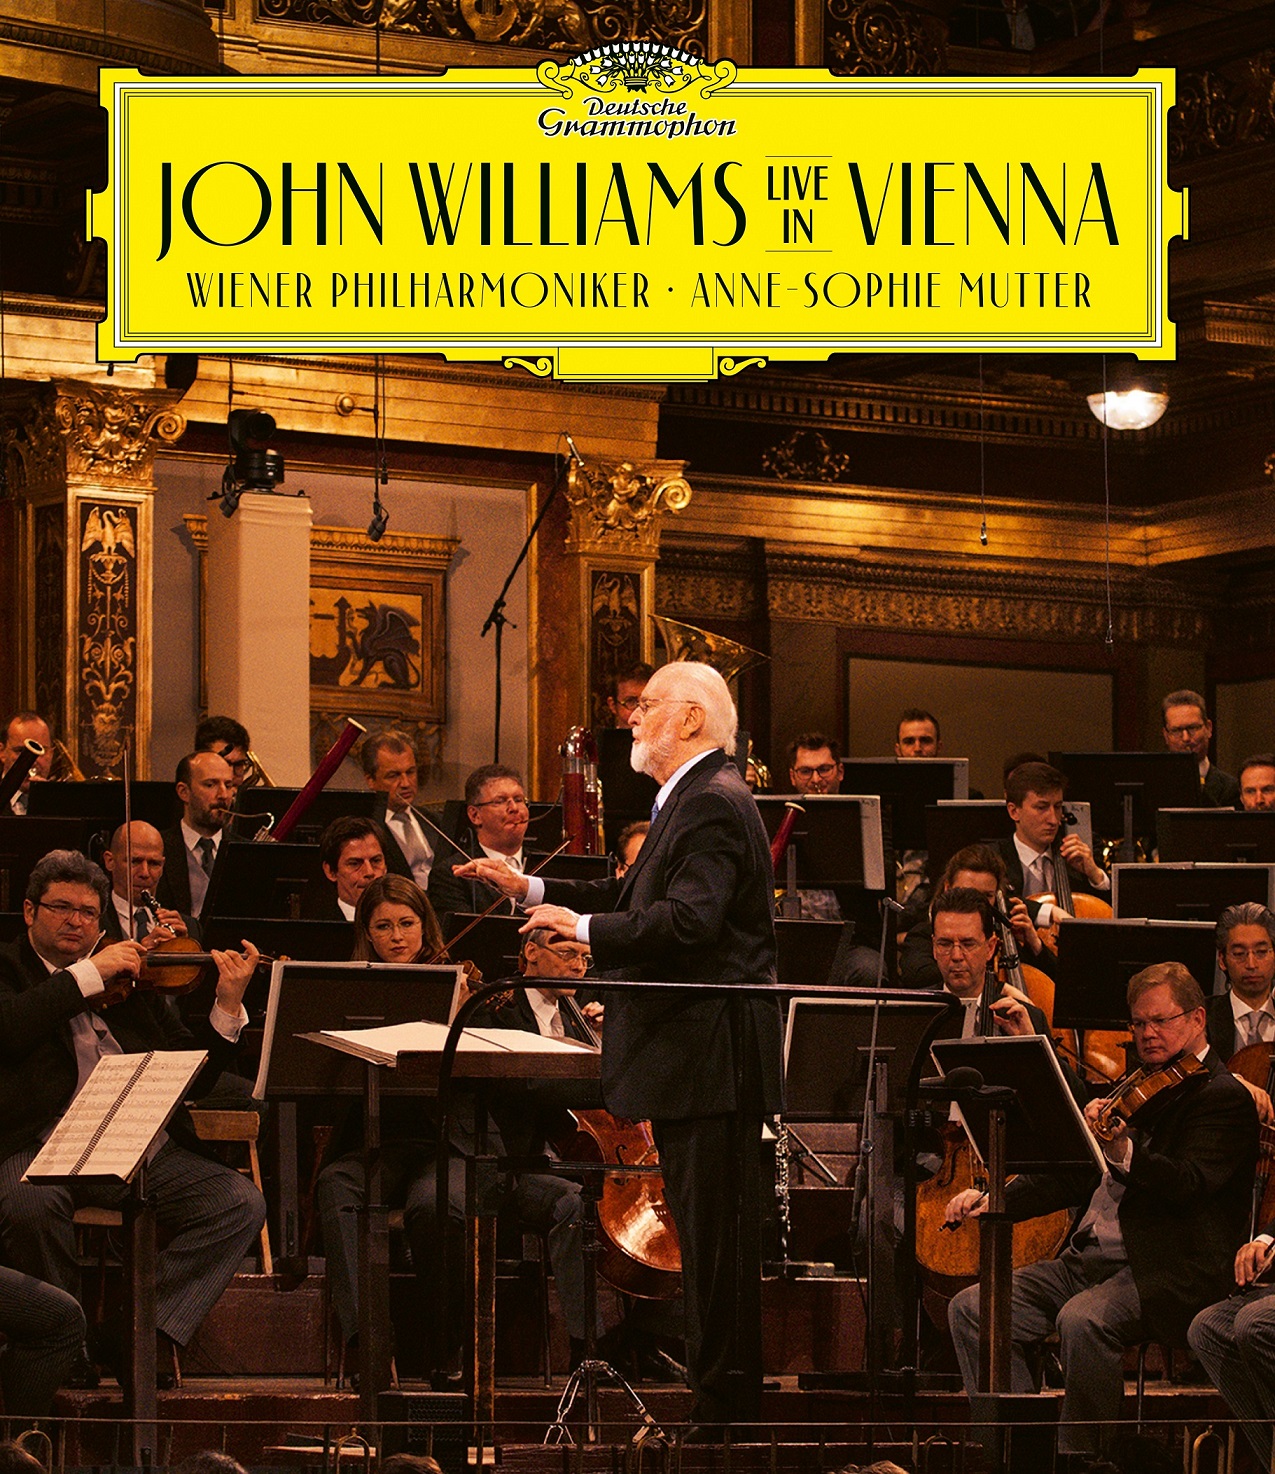 映画音楽の巨匠、ジョン・ウィリアムズが、世界最高峰のオーケストラ、ウィーン・フィルを指揮した奇跡の公演をライブ録音！『スター・ウォーズ